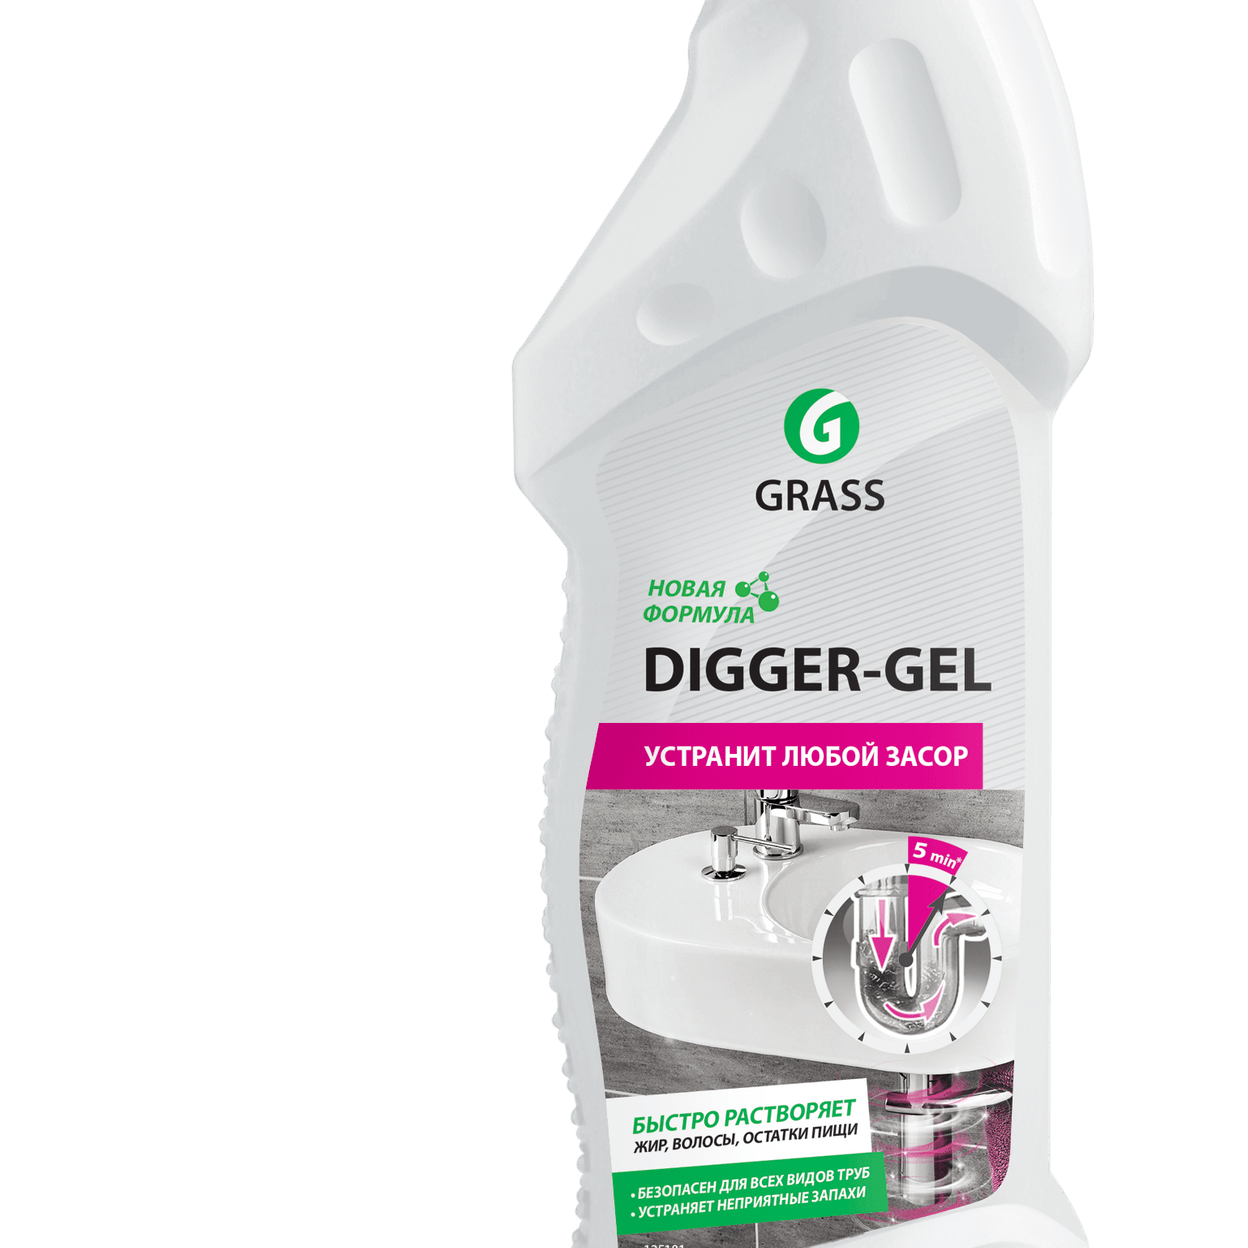 Digger gel для прочистки. Grass "Digger-Gel" гель для чистки труб 750 мл. 125181 Grass ср-во для прочистки труб "Digger-Gel" 750 мл, шт. Средство Грасс диггер гель для прочистки канализационных труб 750 мл. Диггер гель 750мл.